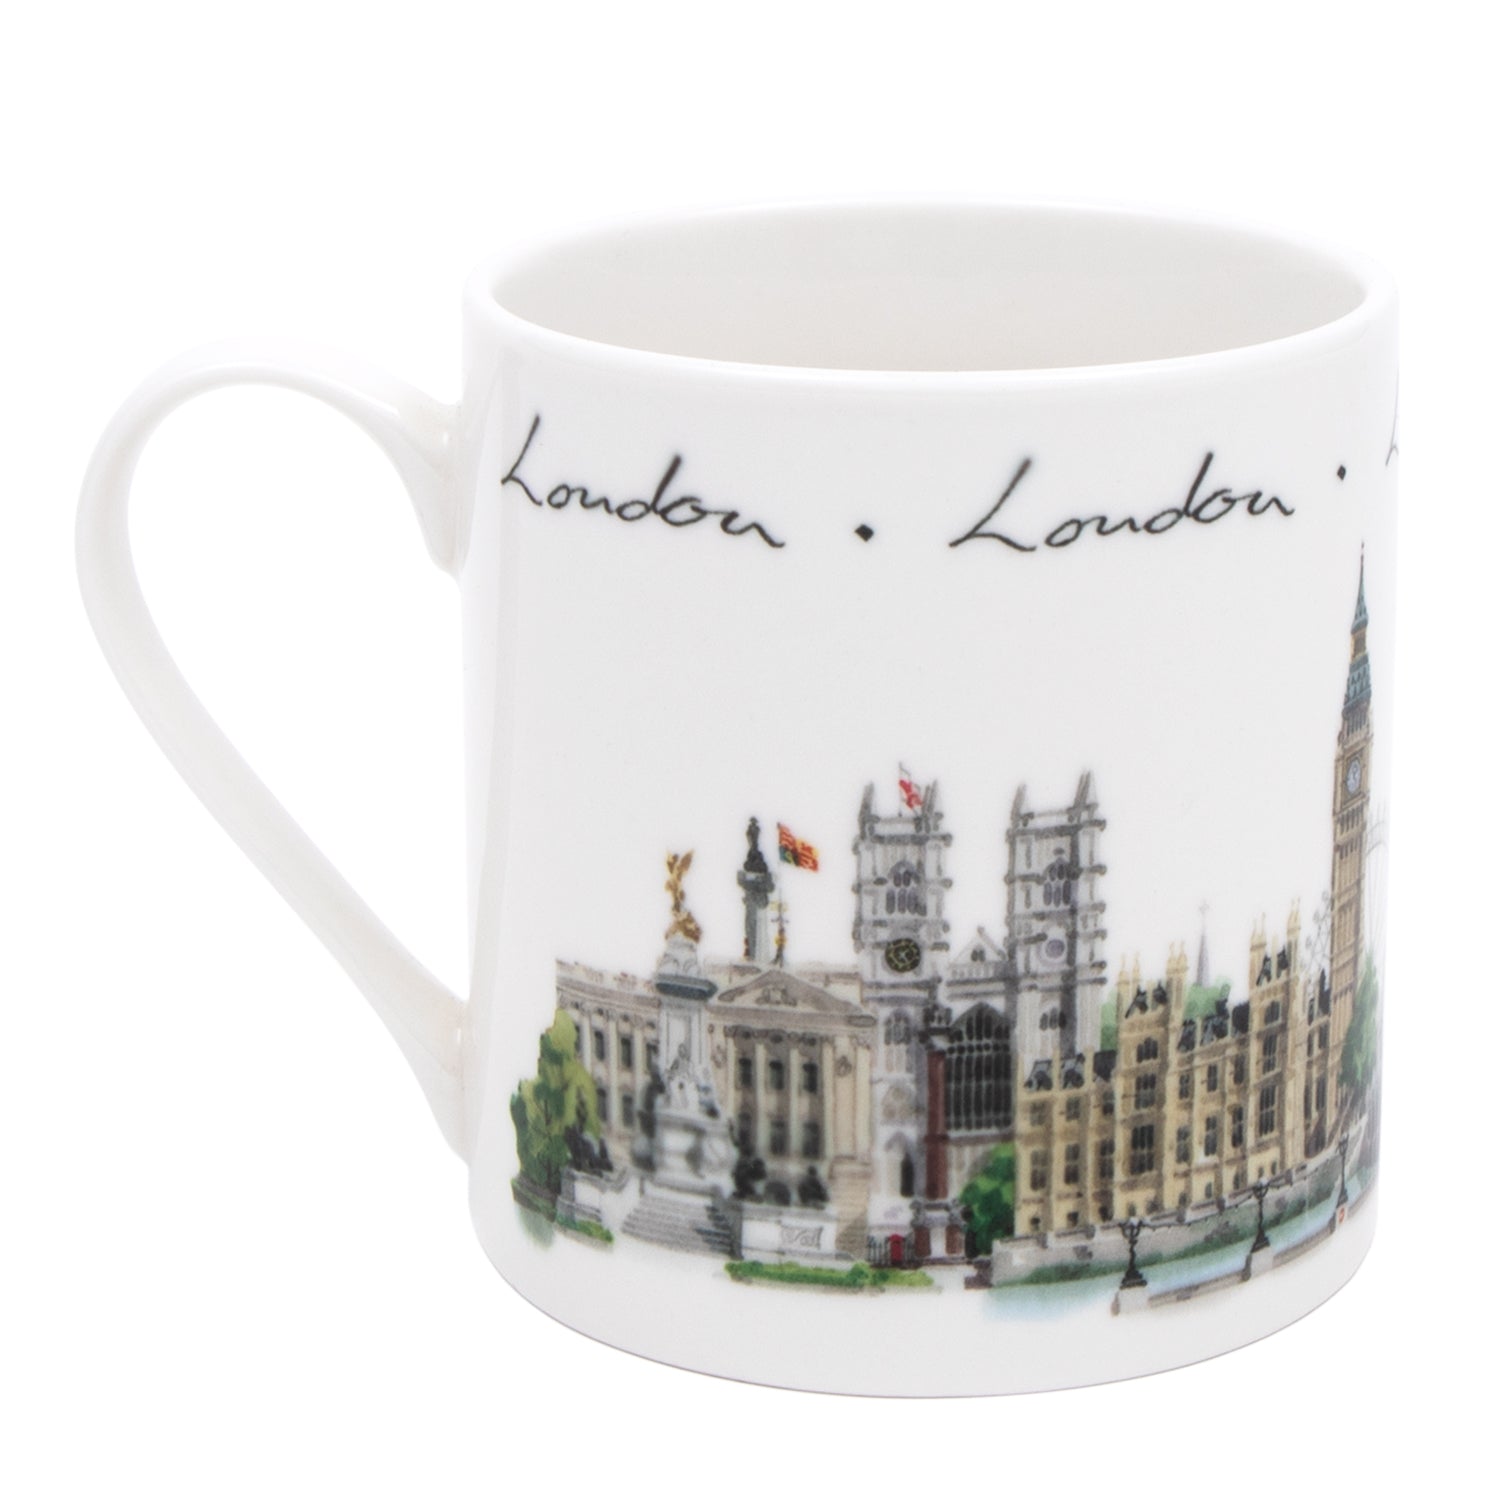 London Landmark Mug 2